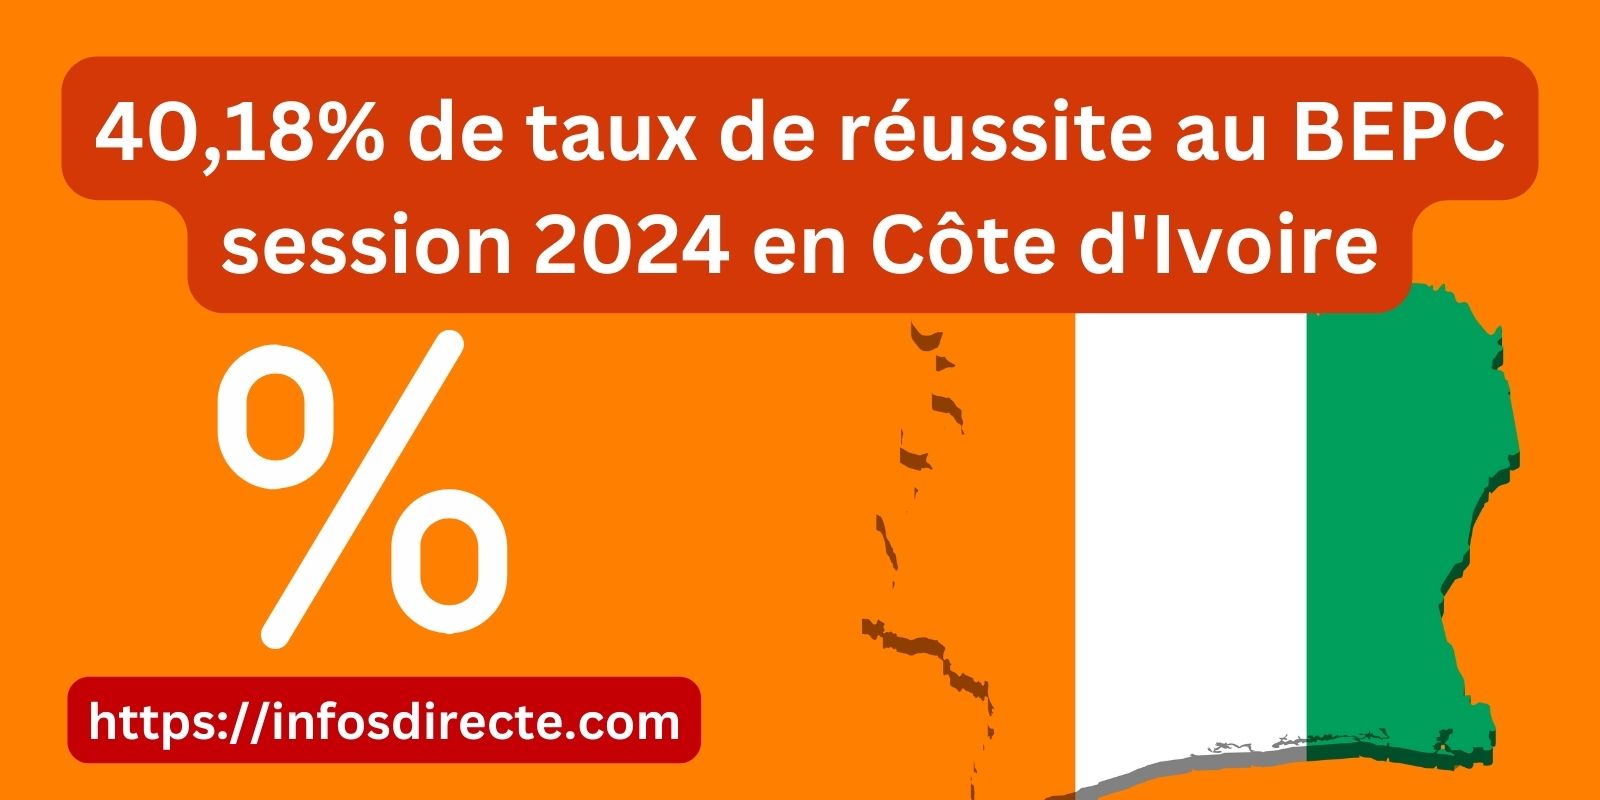 40,18% de taux de réussite au BEPC session 2024 en Côte d’Ivoire